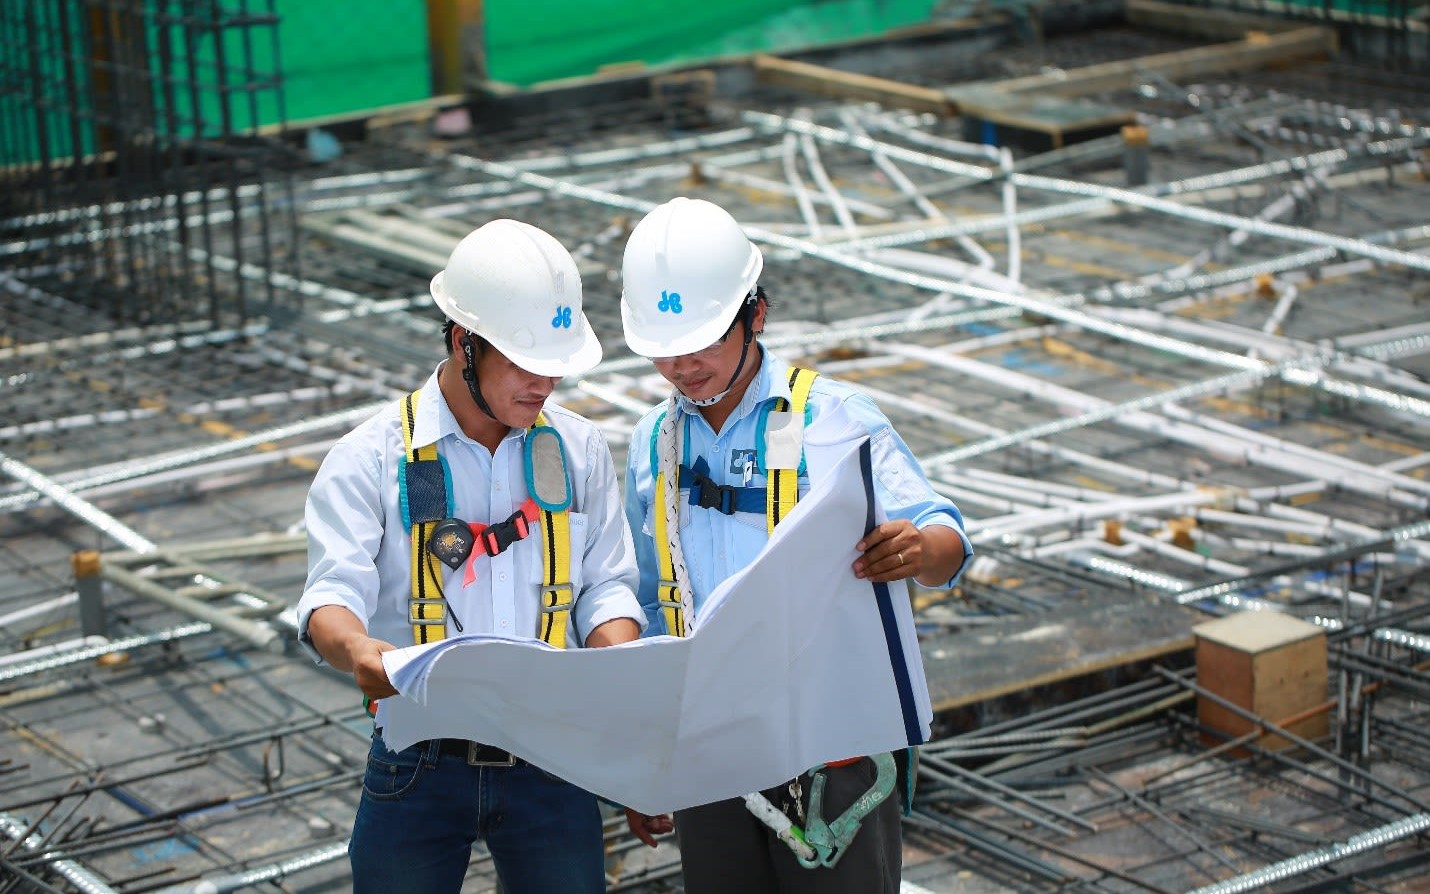 Nhà thầu xây dựng hàng đầu Việt Nam: 70% nhân sự bị xóa tên sau 4 năm, vốn chủ sở hữu 